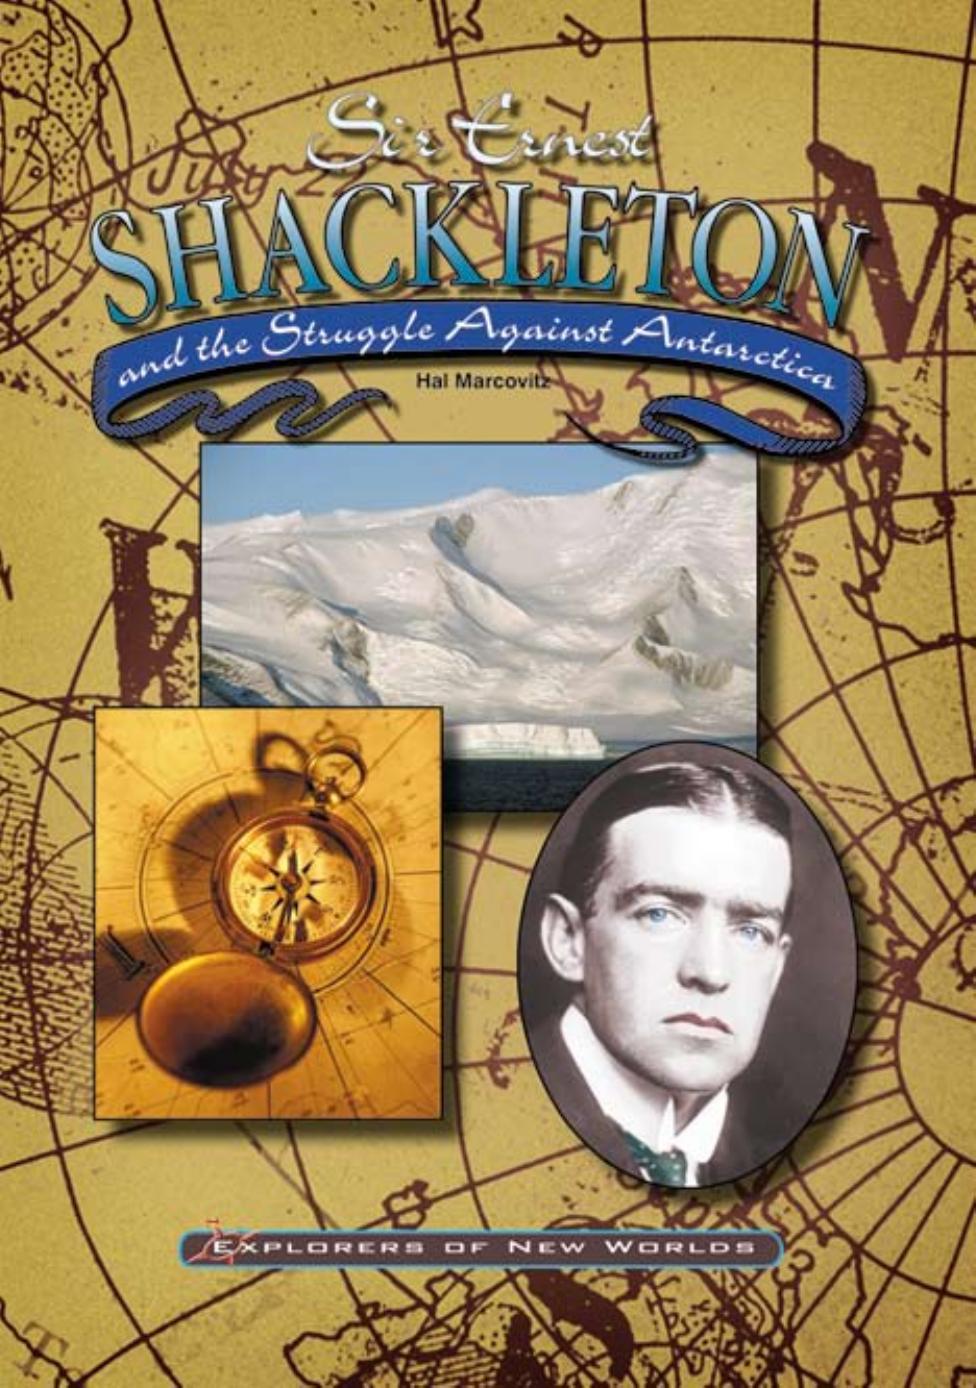 Sir Ernest Shackleton and the Struggle Against Antartica